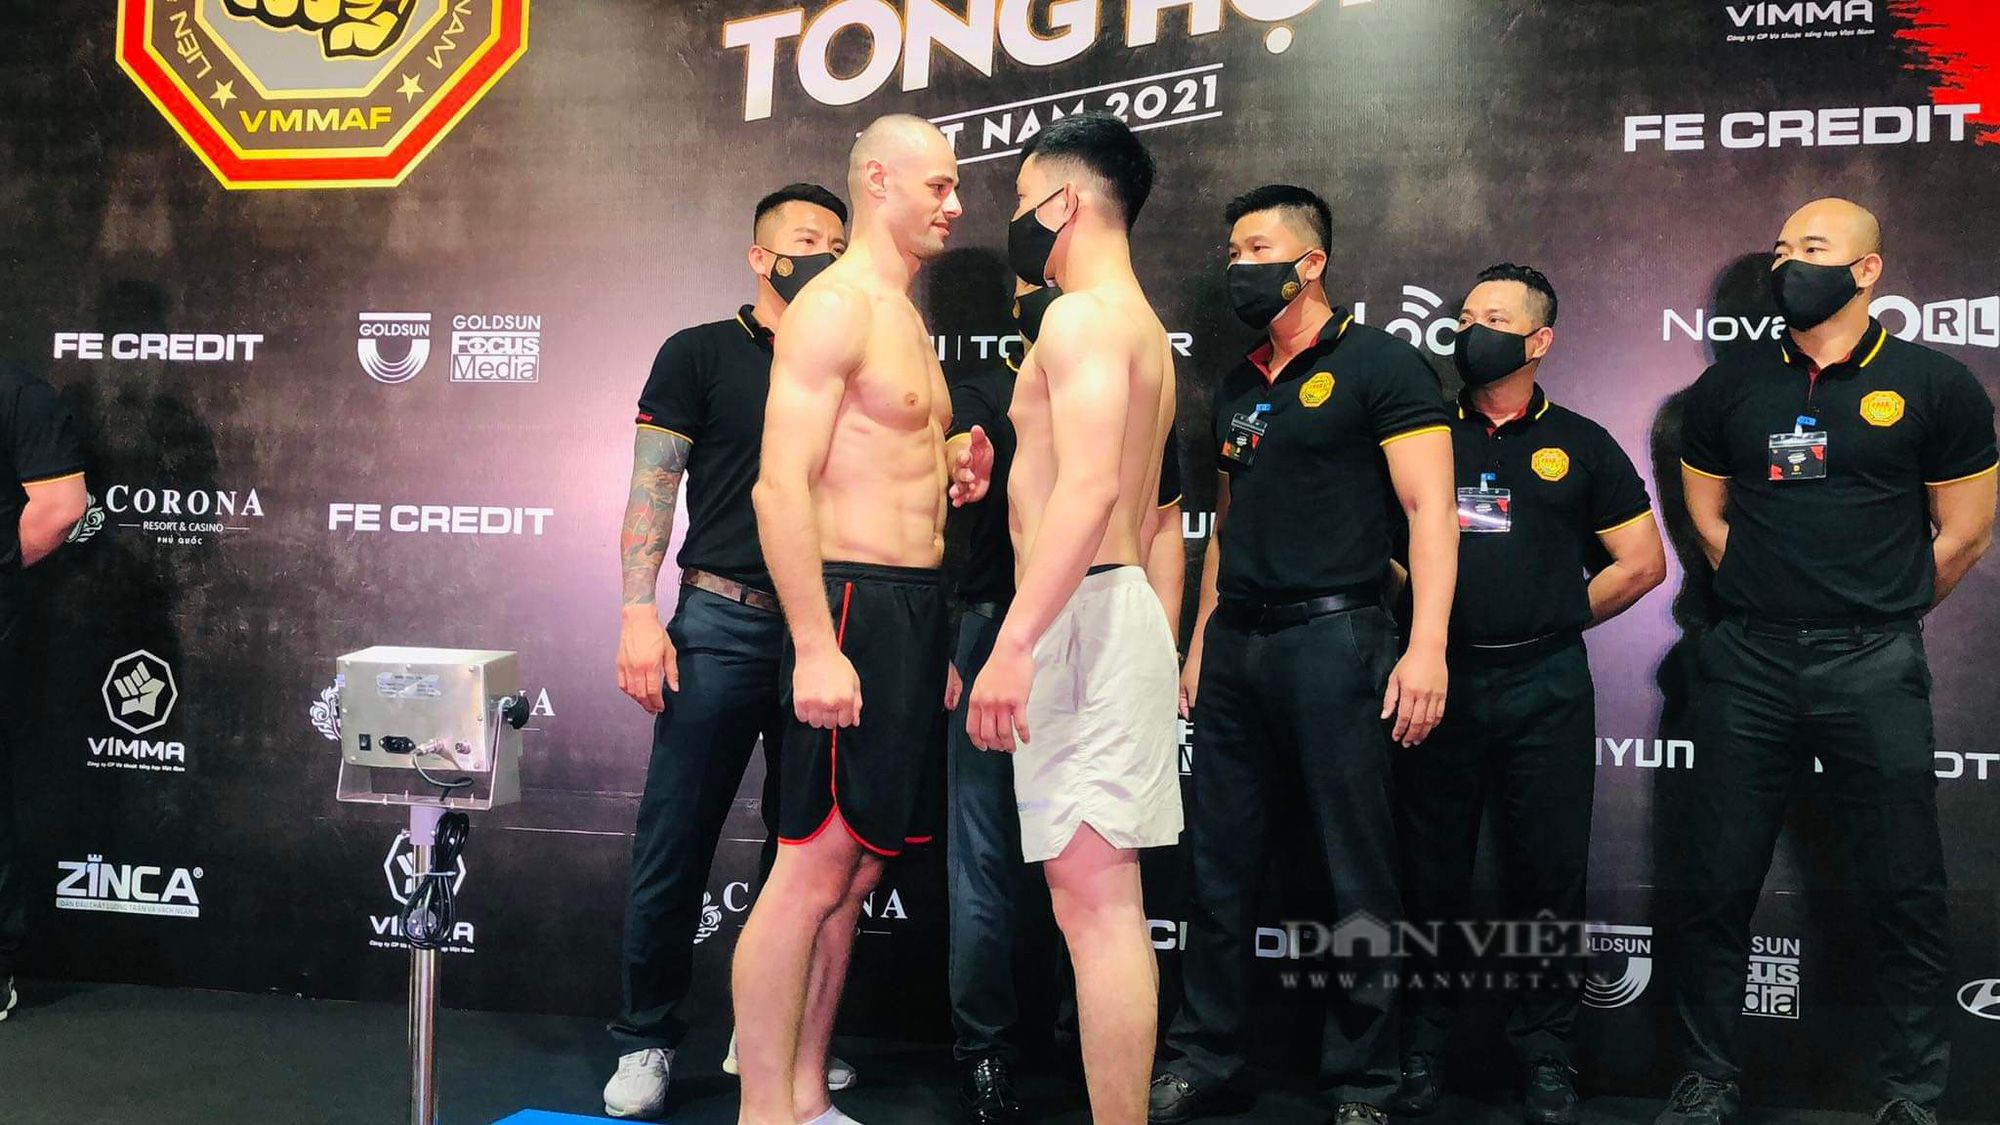 Sắp diễn ra giải đấu võ thuật tổng hợp MMA đầu tiên tại Việt Nam - Ảnh 5.